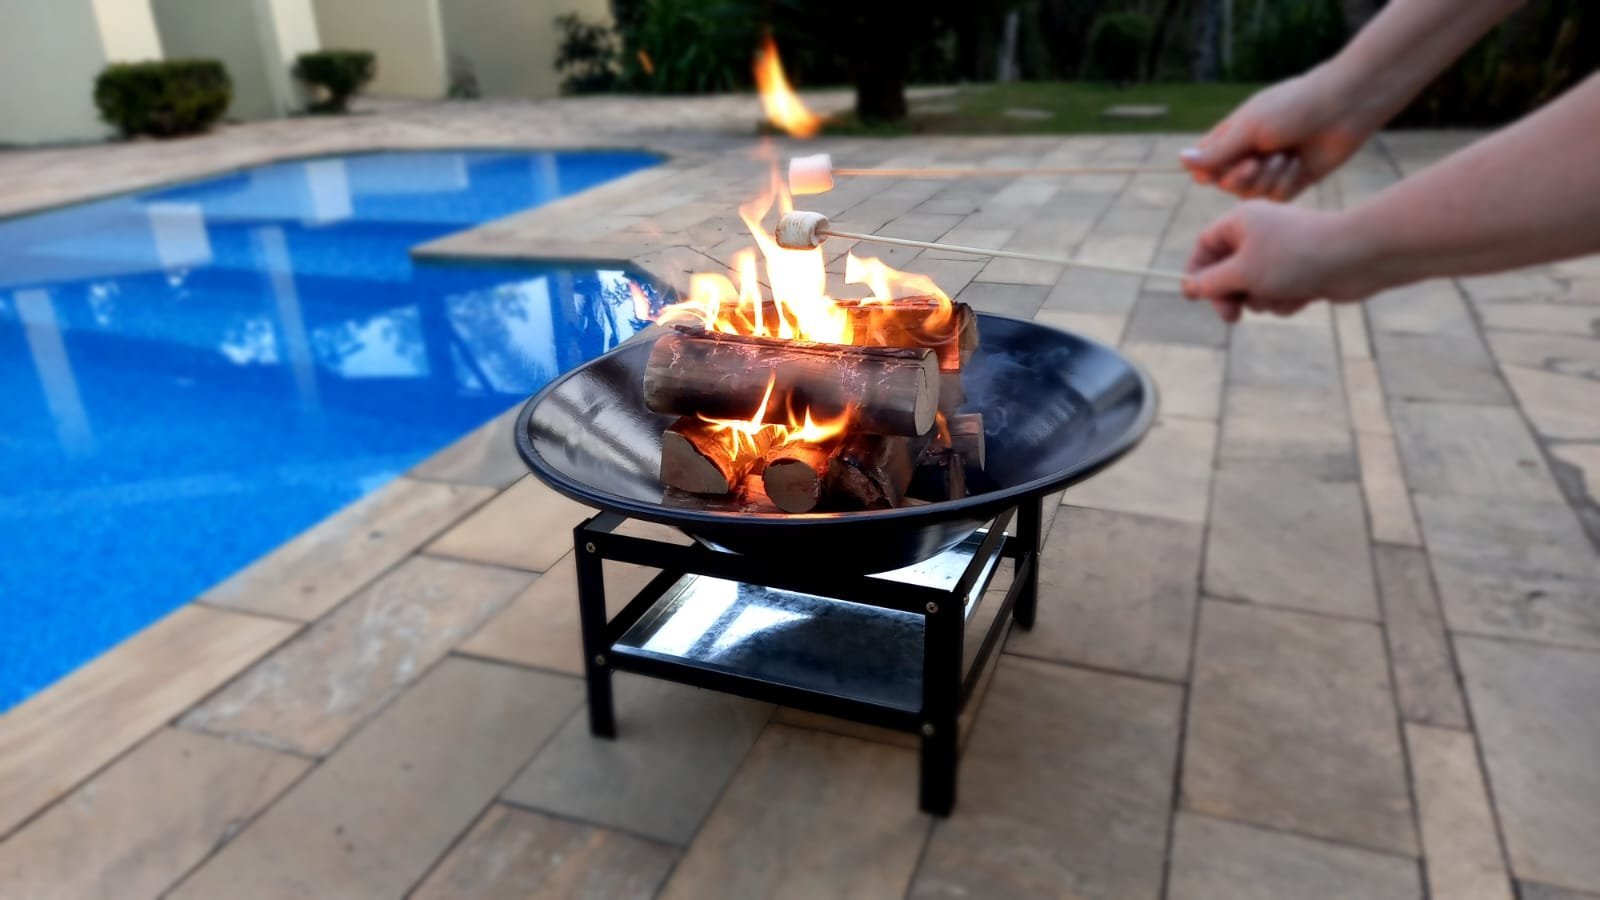 Lareira P/ Jardim Externa 52cm Portátil Aquecedor Fogueira Fireplace